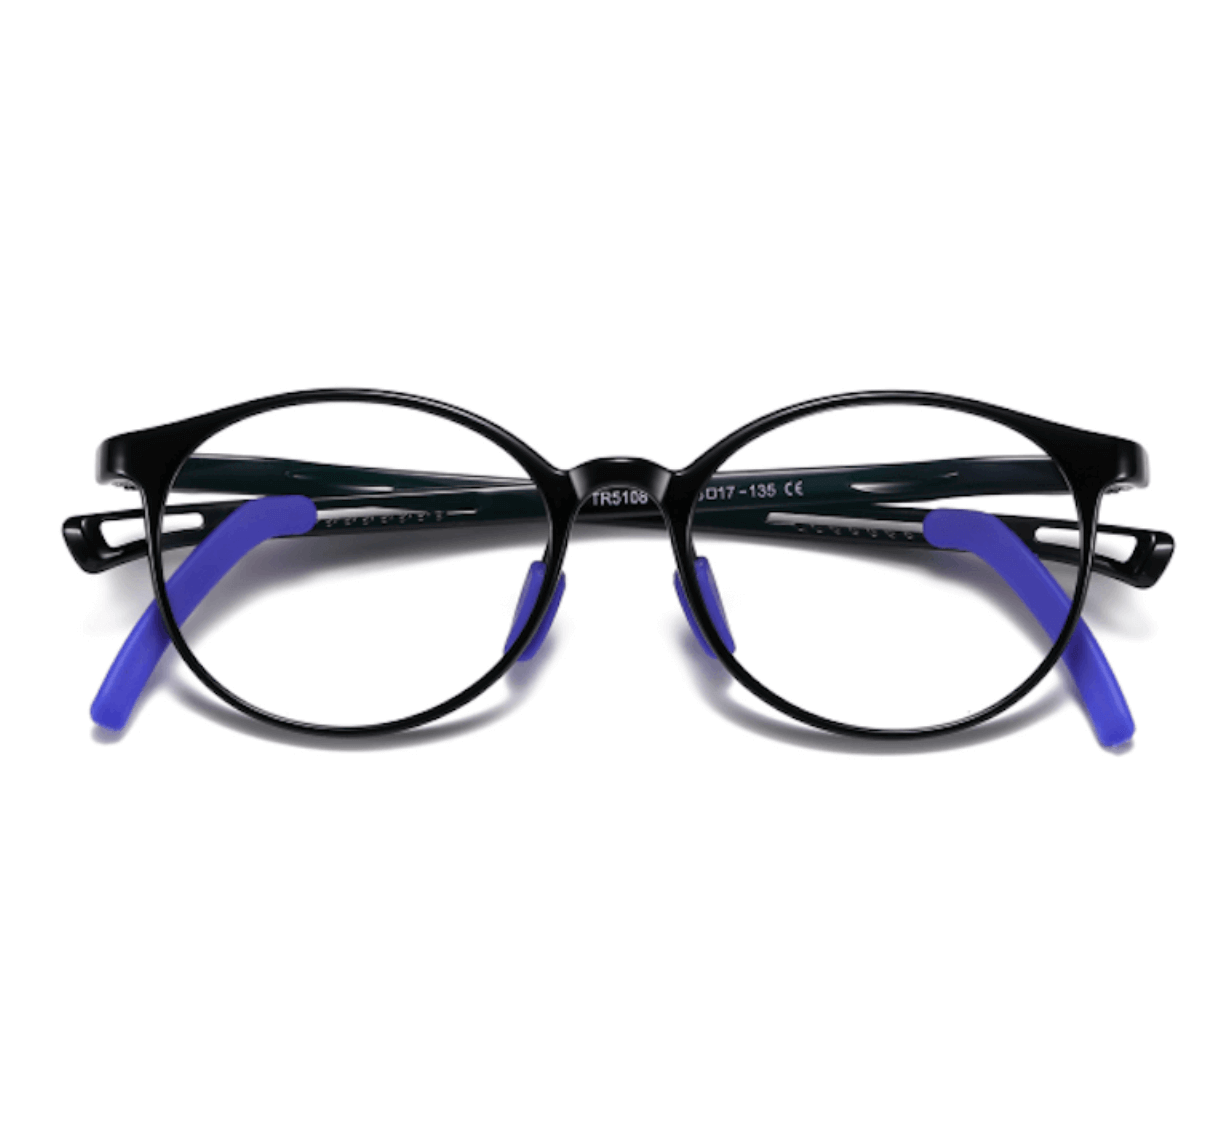 blue light glasses manufacturer, blue light glasses supplier, blue light glasses bulk, custom blue light glasses, blue light glasses for kids